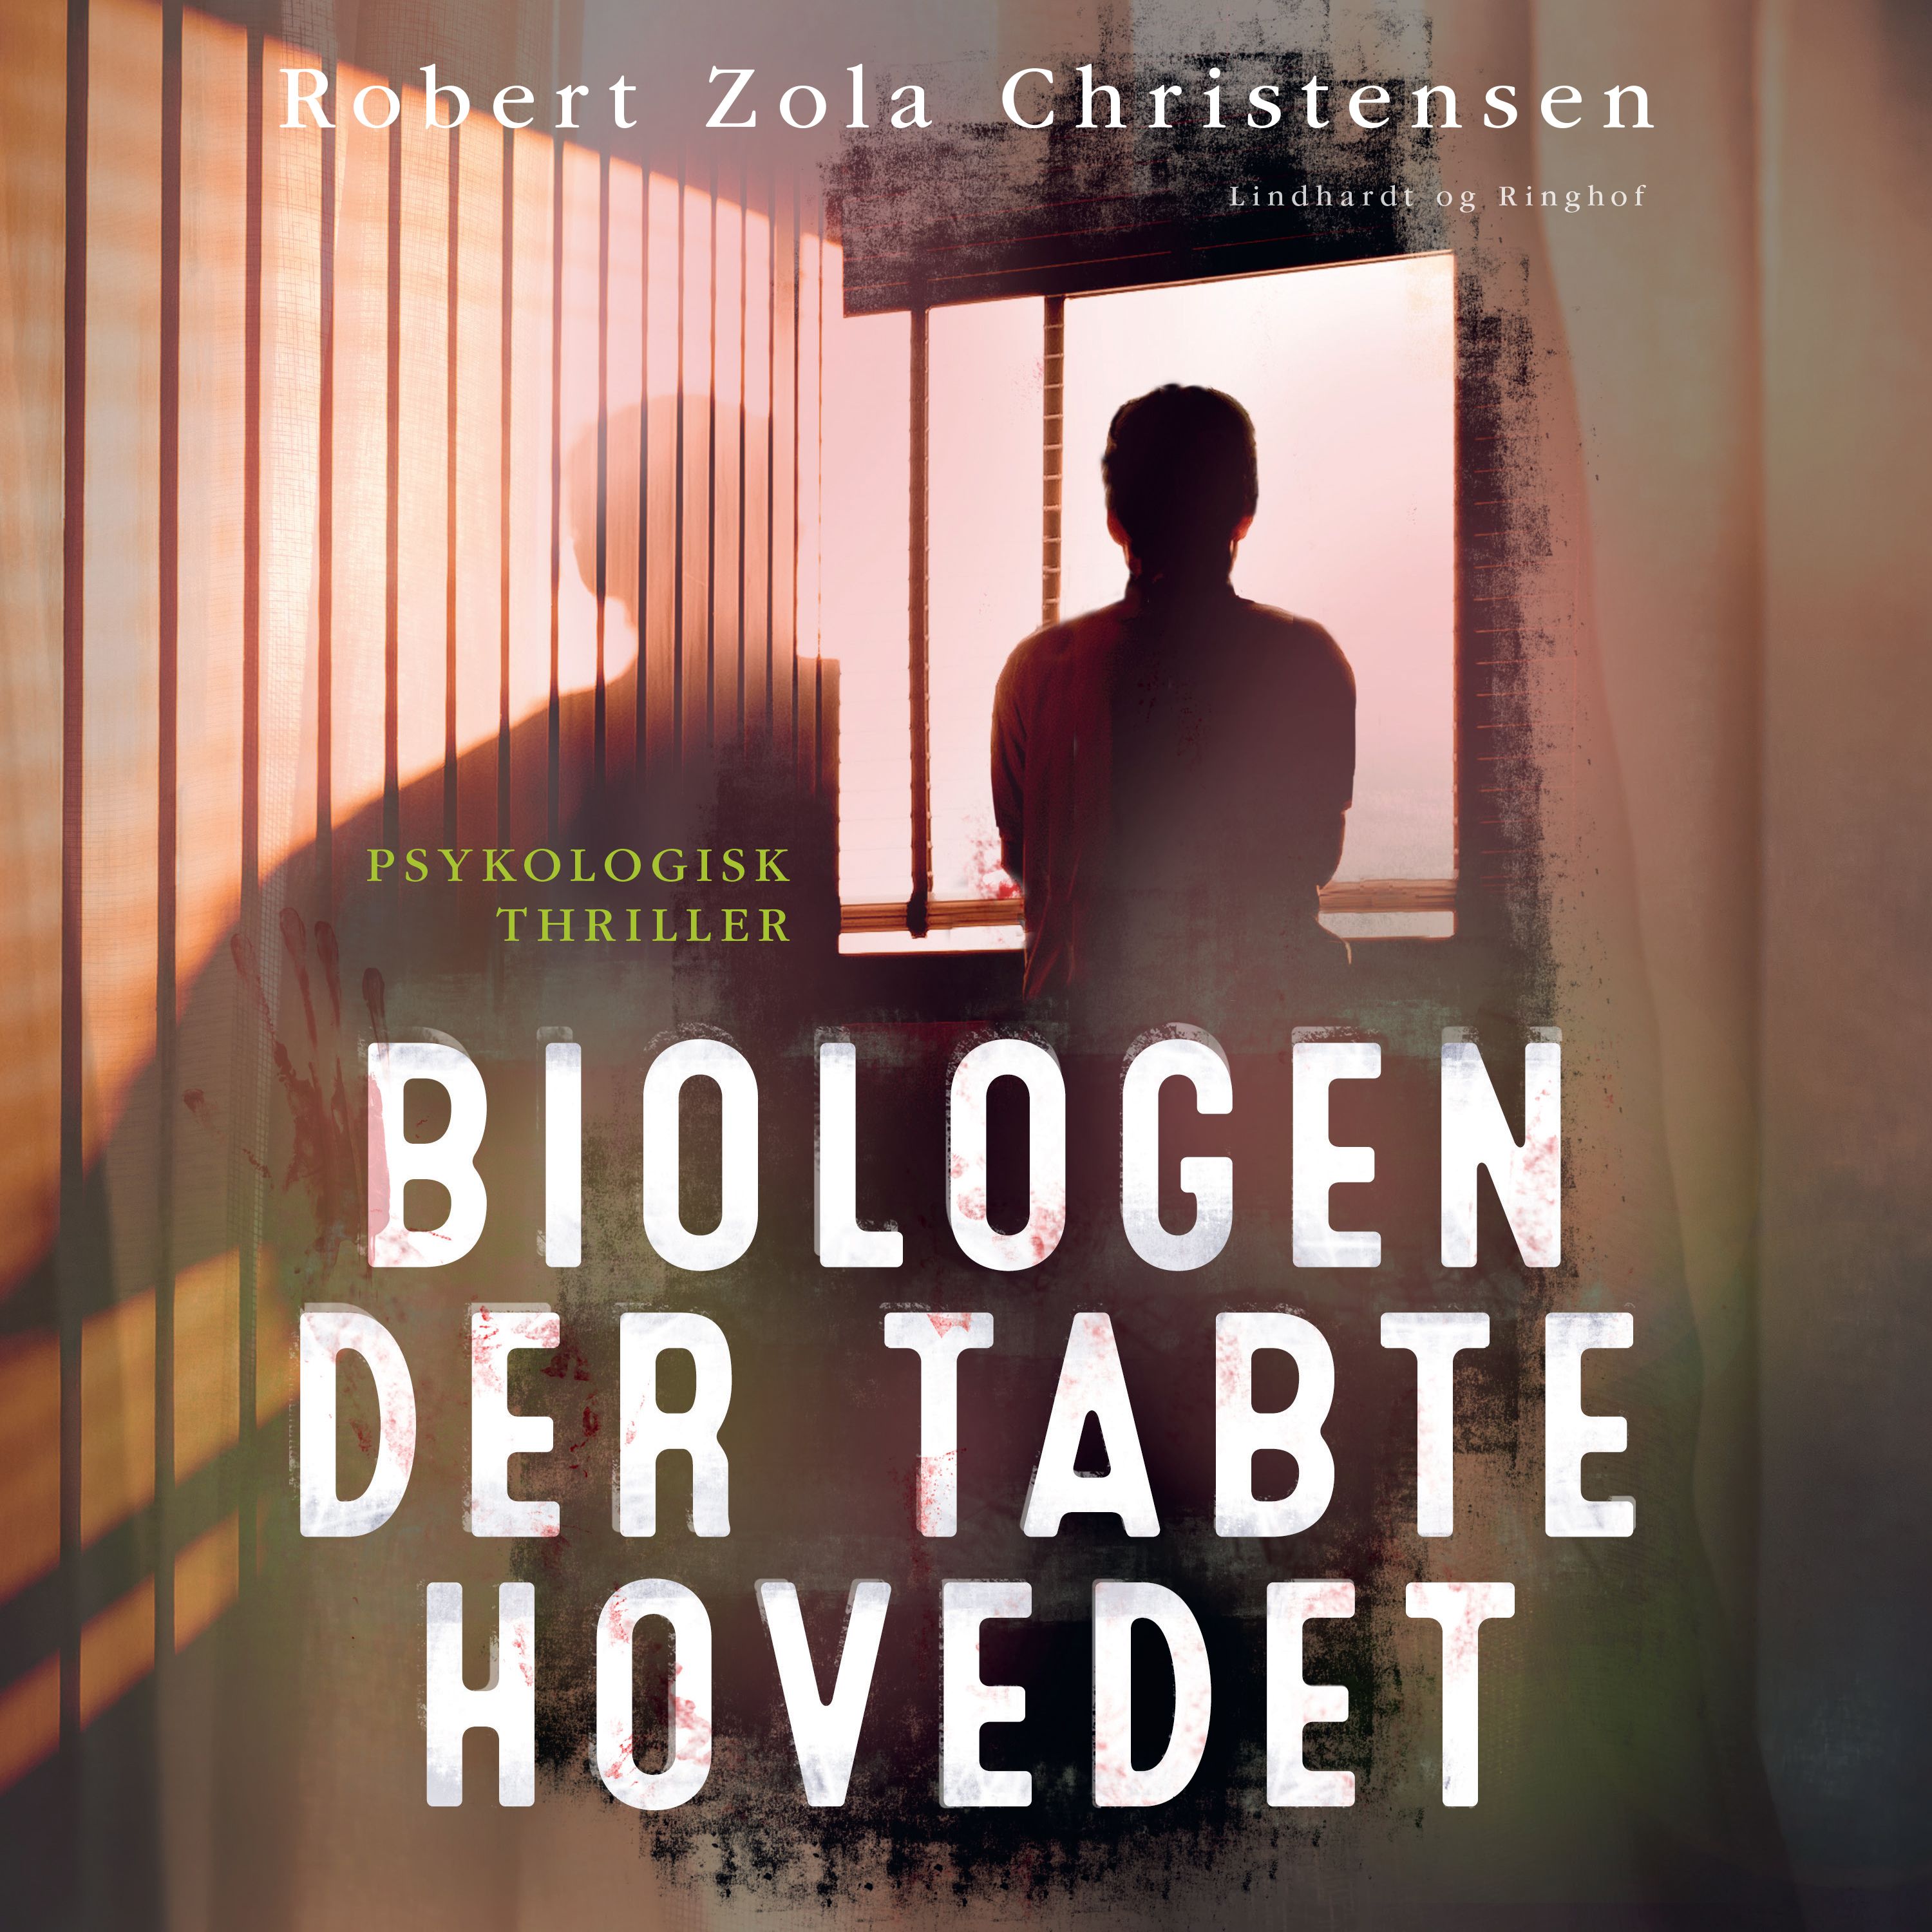 Biologen der tabte hovedet, ljudbok av Robert Zola Christensen